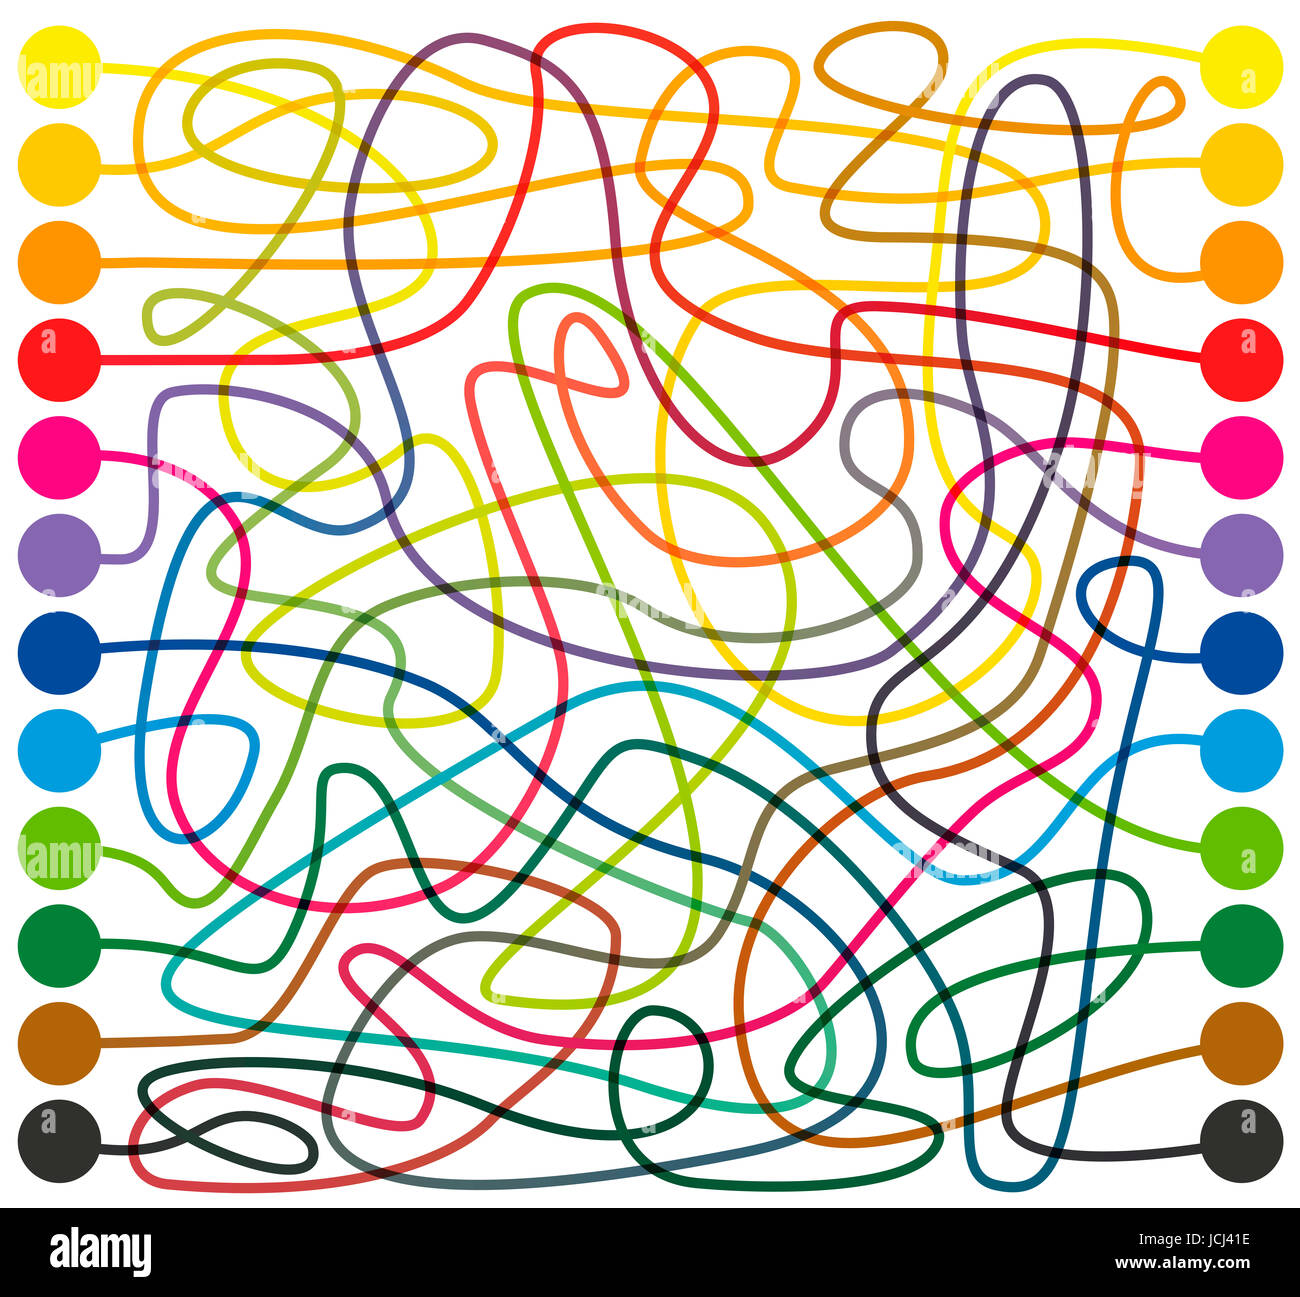 Il labirinto, linee colorate - collegare i punti colorati, trovare il giusto modo attraverso l'intricato labirinto colorato da una estremità all'altra. Foto Stock